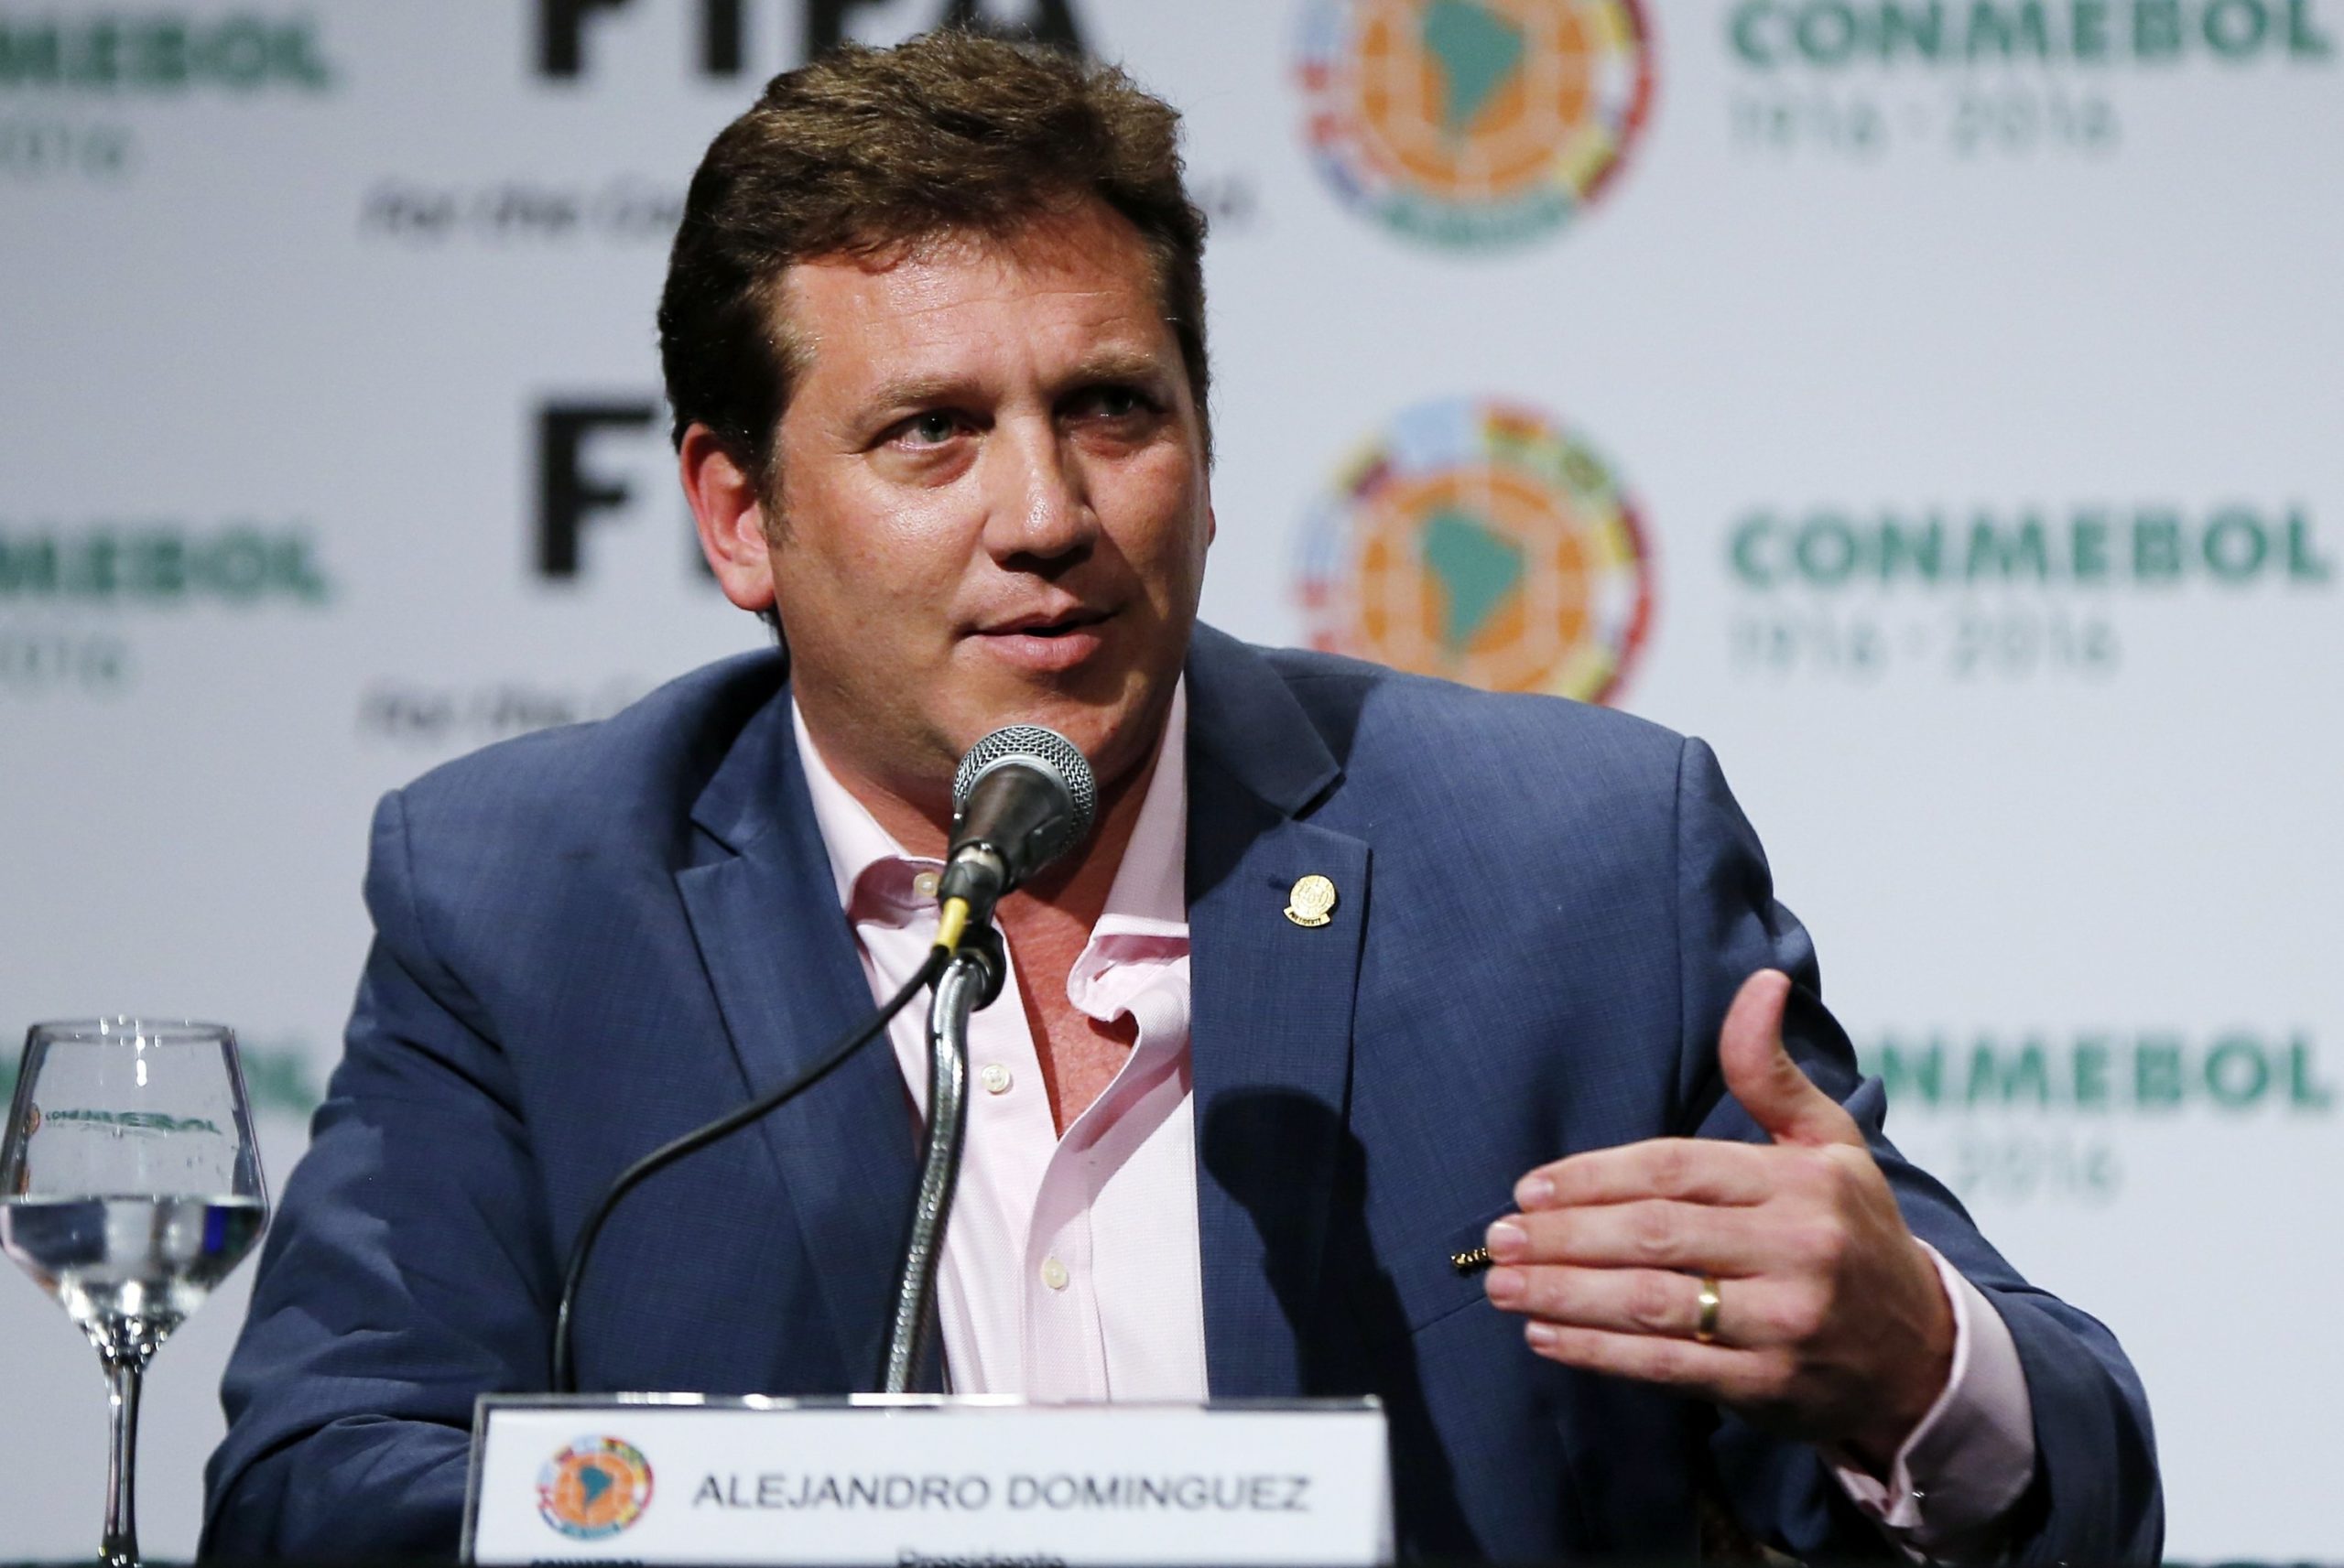 CONMEBOL president Alejandro Dominguez